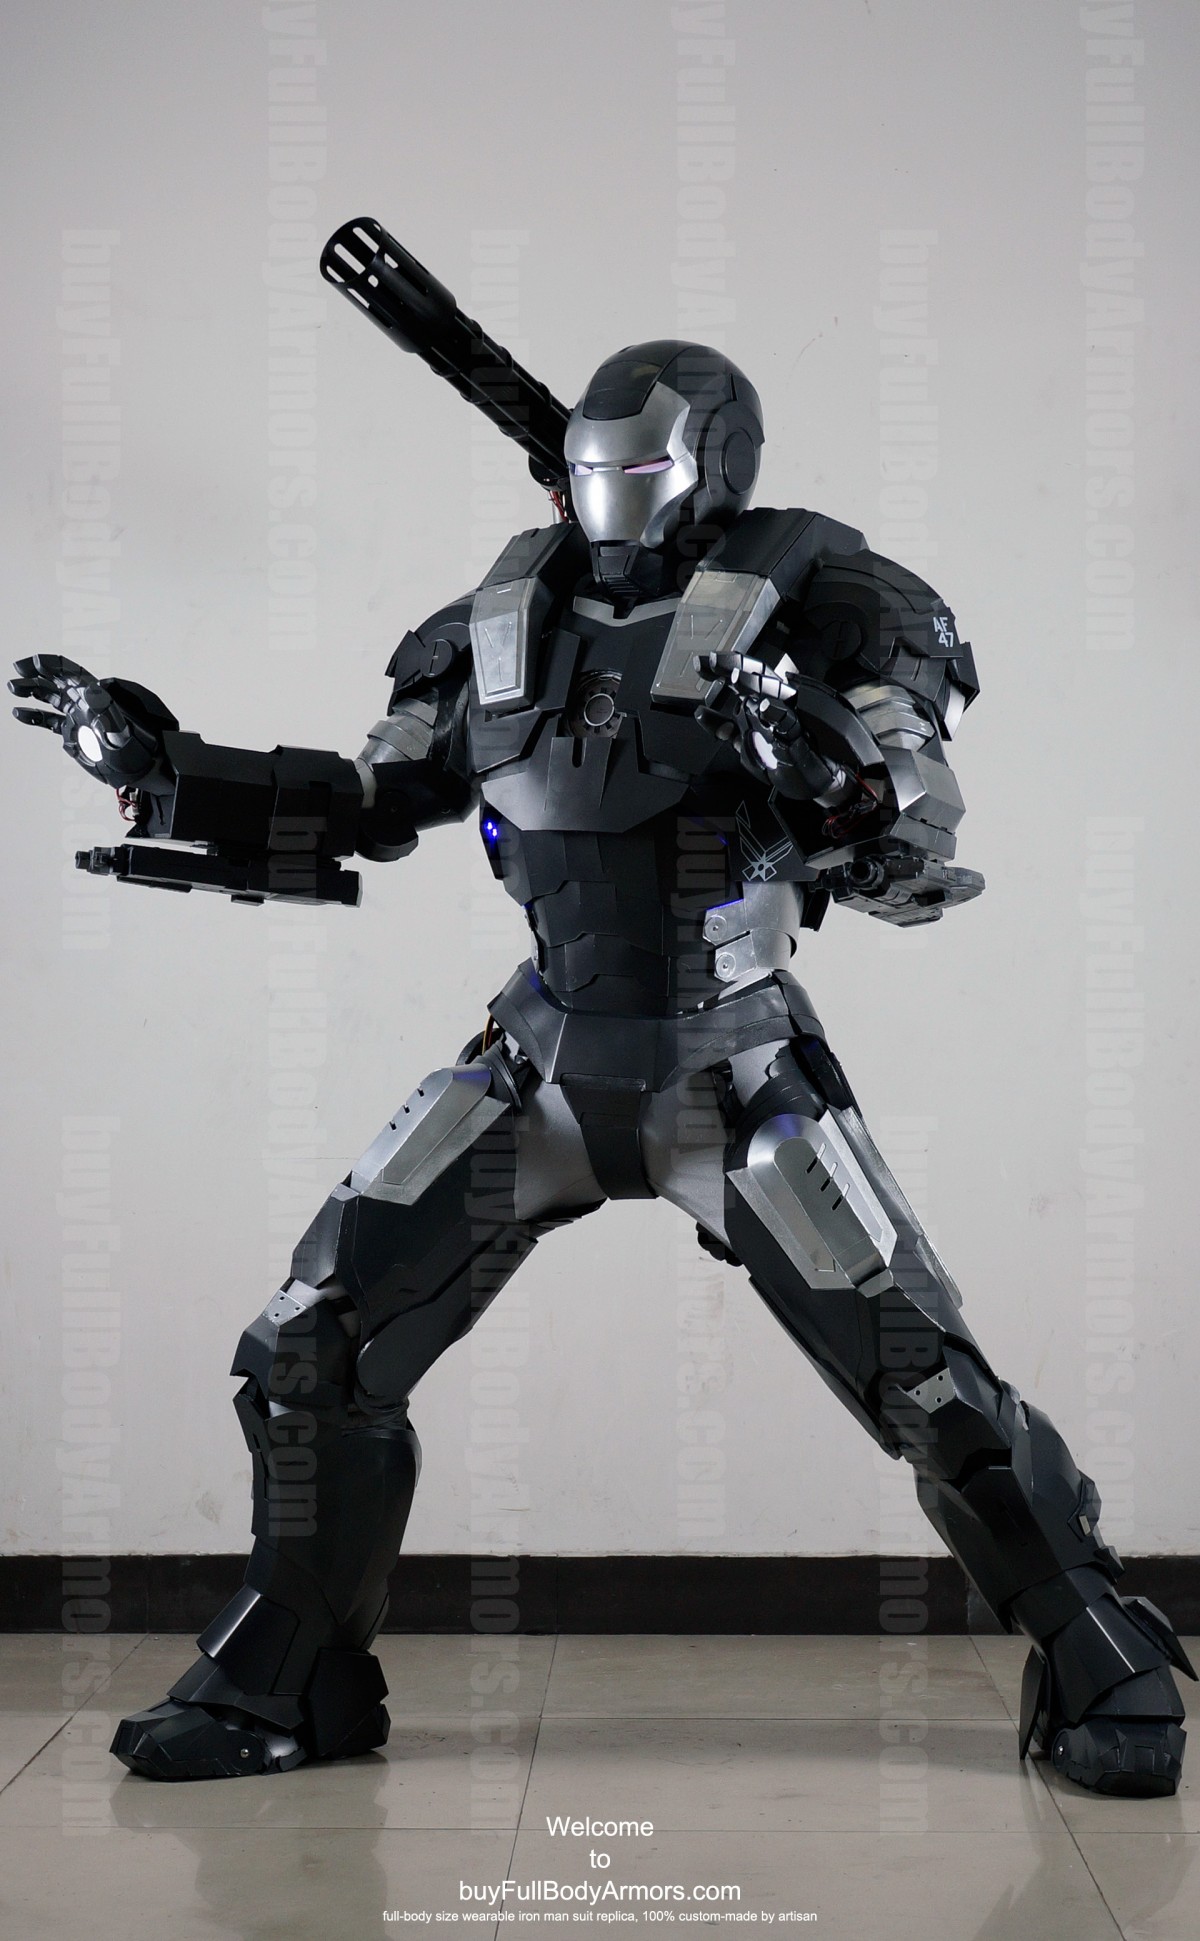 iron man 2 war machine costume